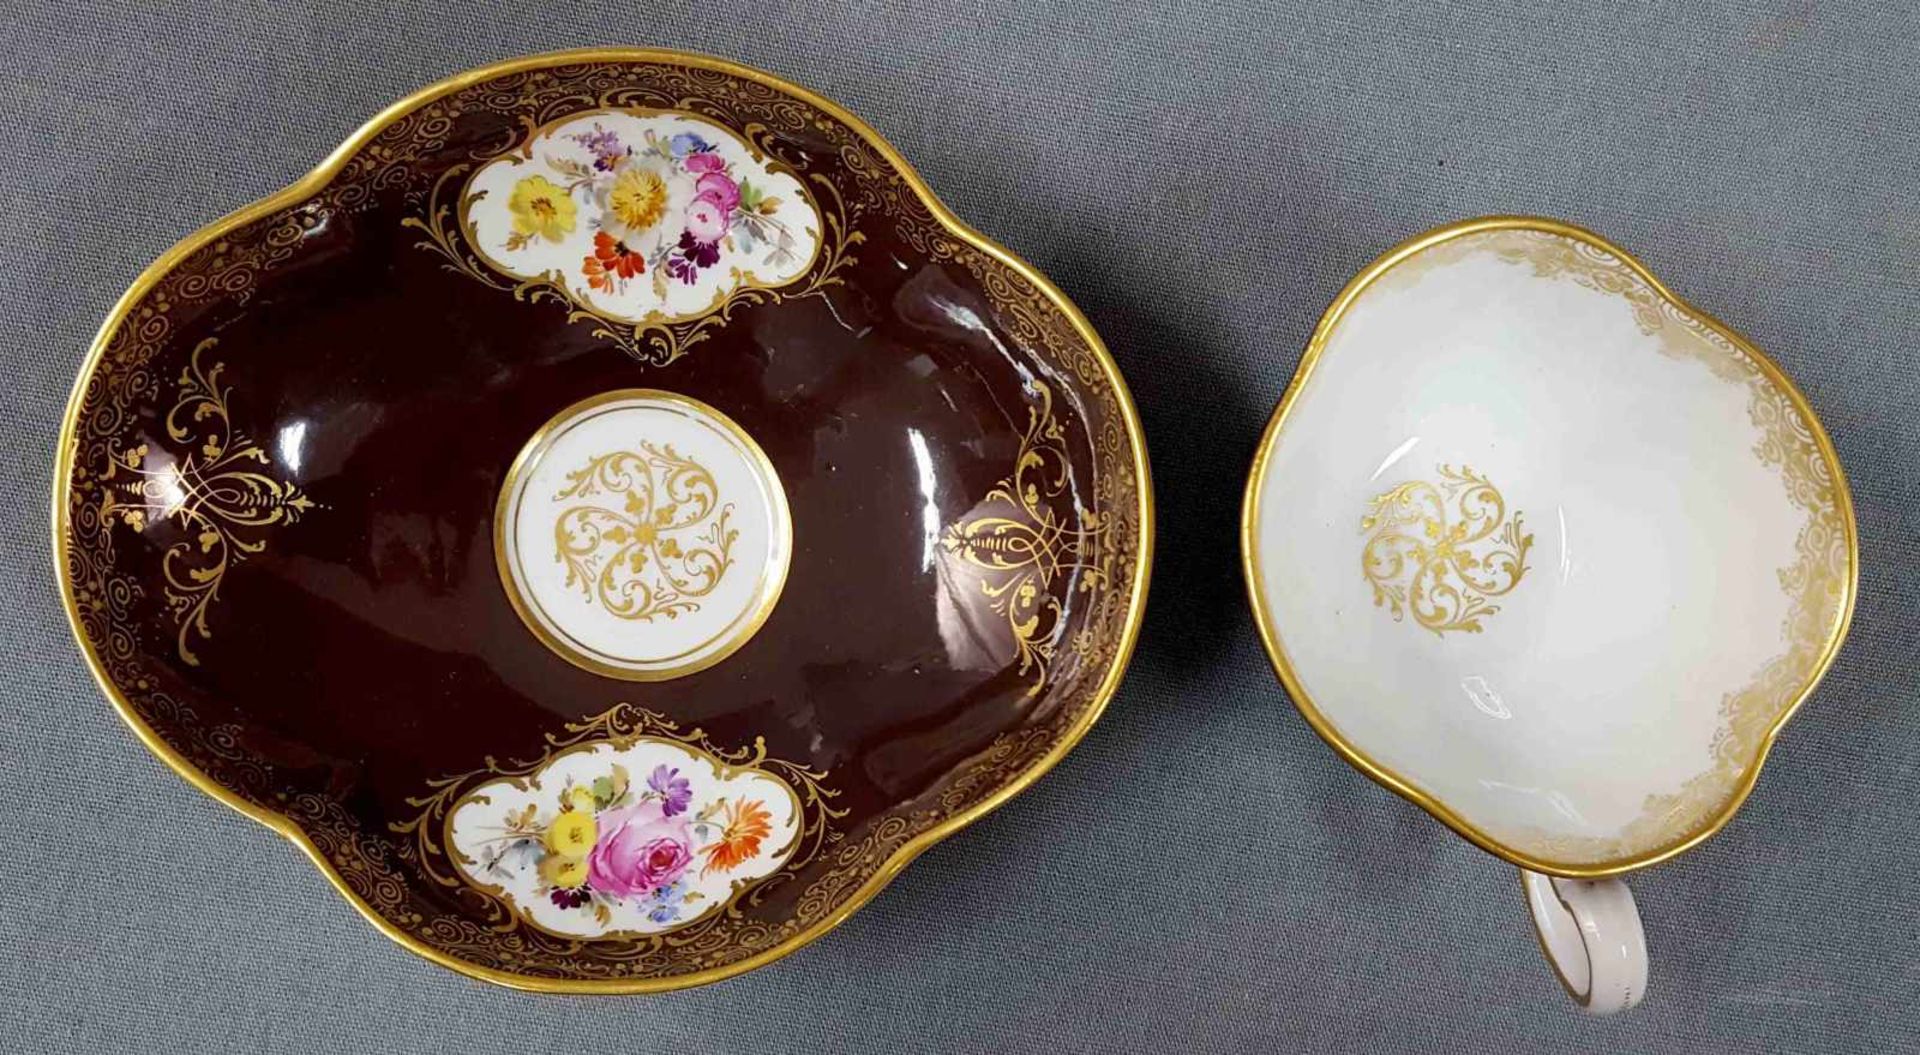 11 parts of Meissen porcelain. Up to 27 cm high. - Bild 4 aus 14